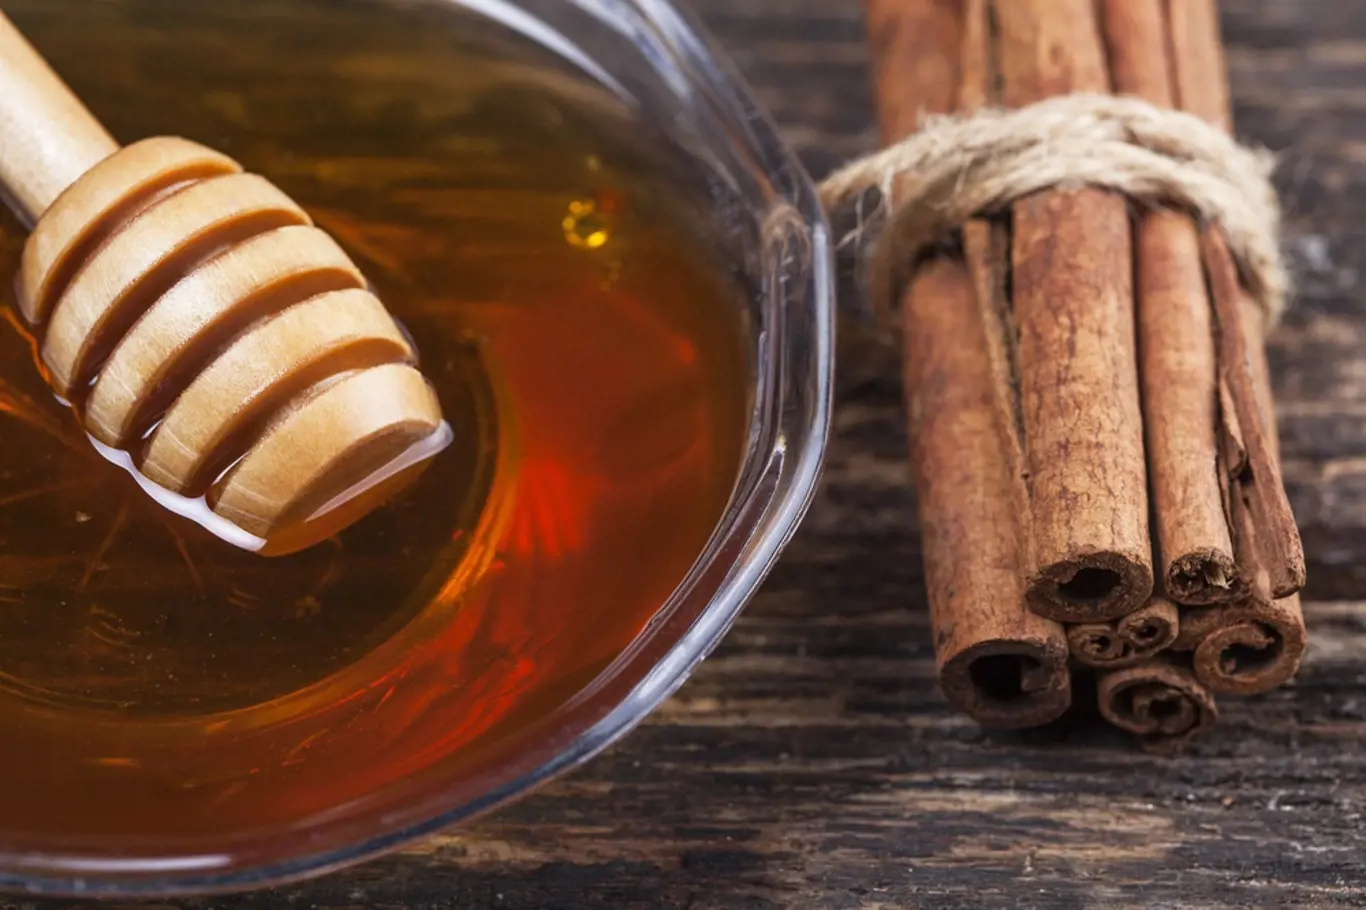 Med a skořice jsou lékem na mnohá onemocnění